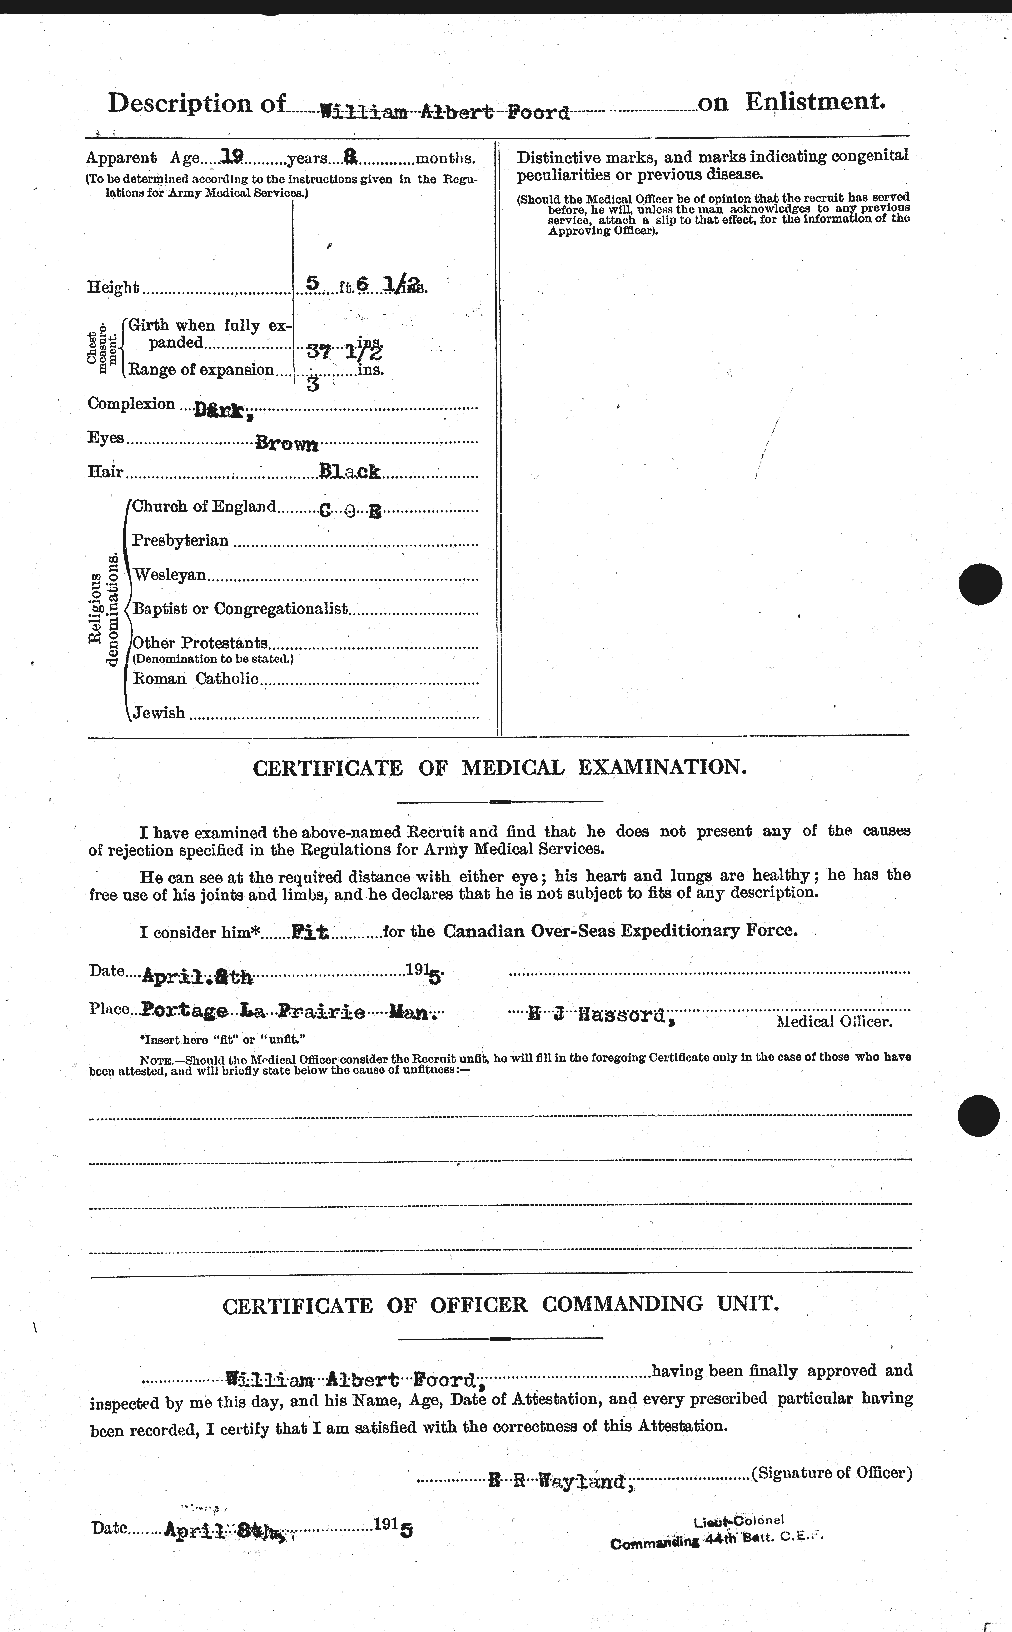 Dossiers du Personnel de la Première Guerre mondiale - CEC 328925b